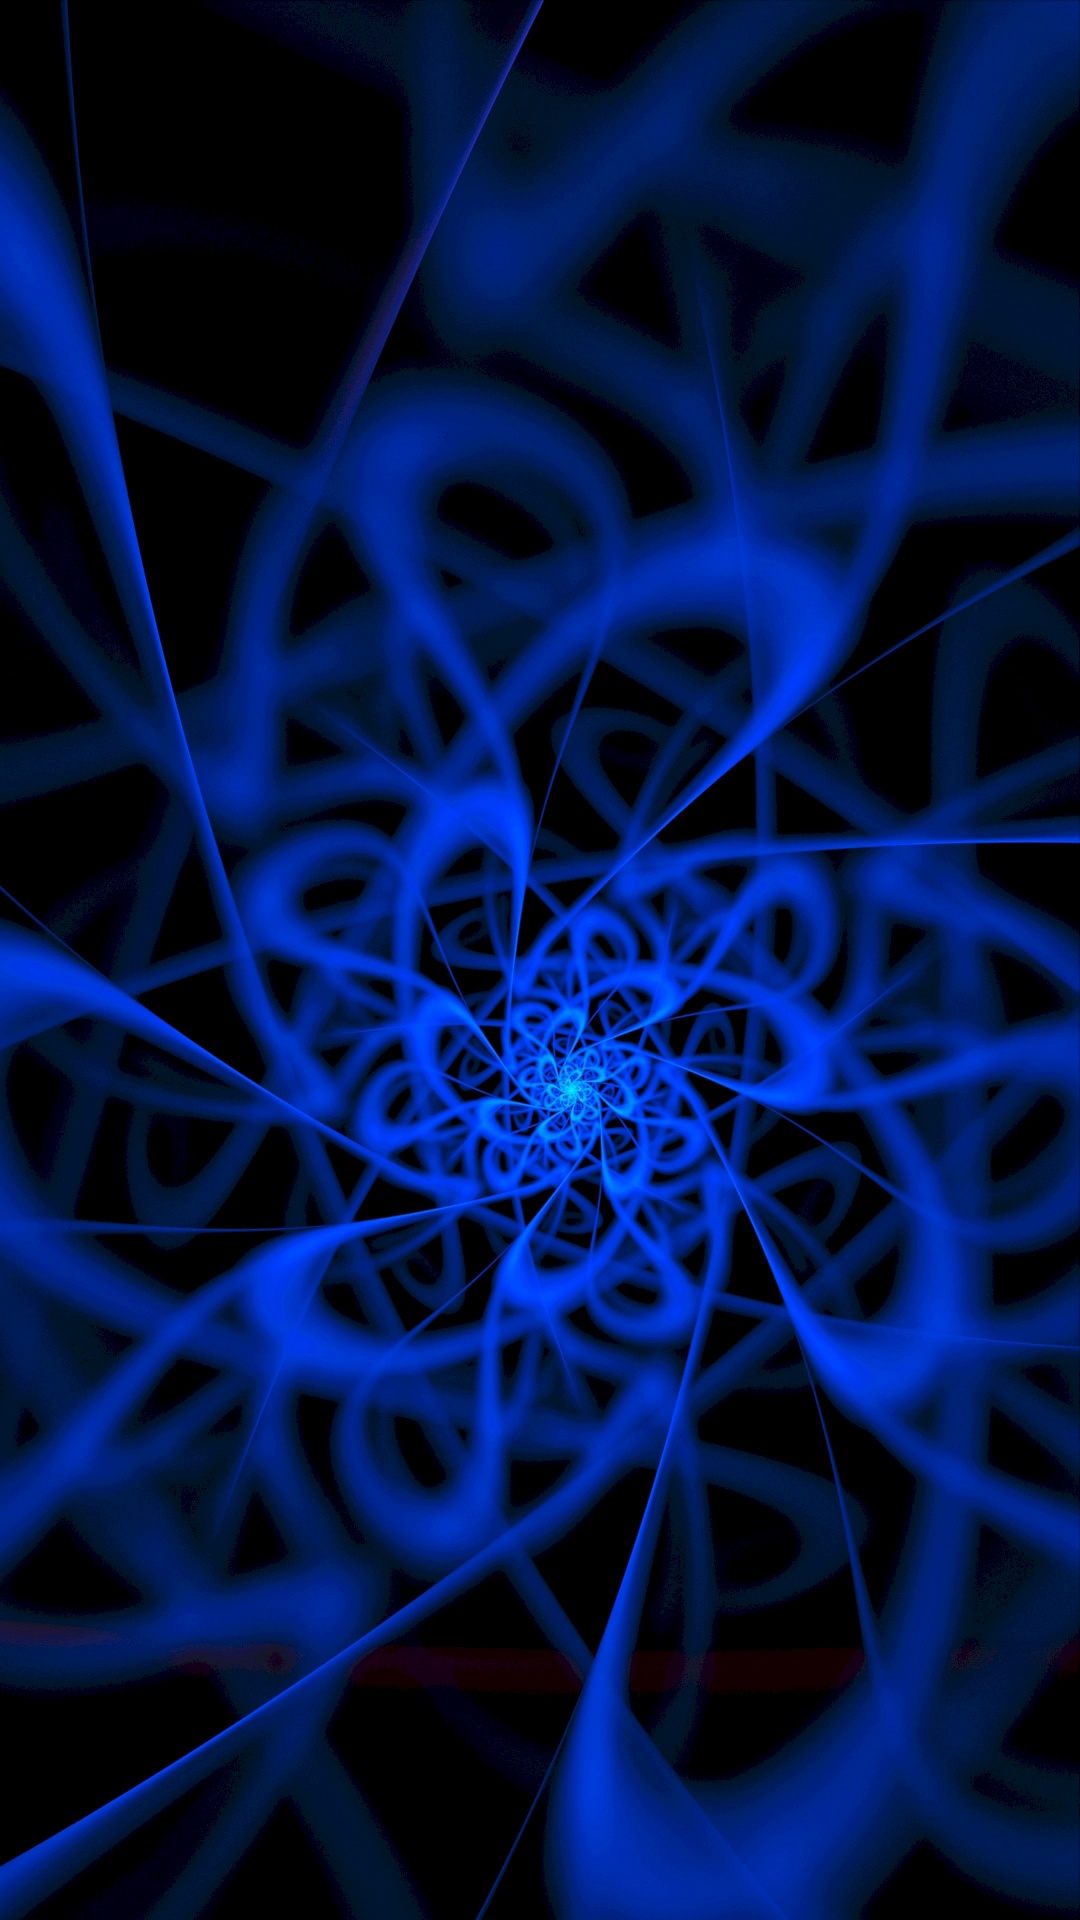 Blaue Und Weiße Spirale Abbildung. Wallpaper in 1080x1920 Resolution